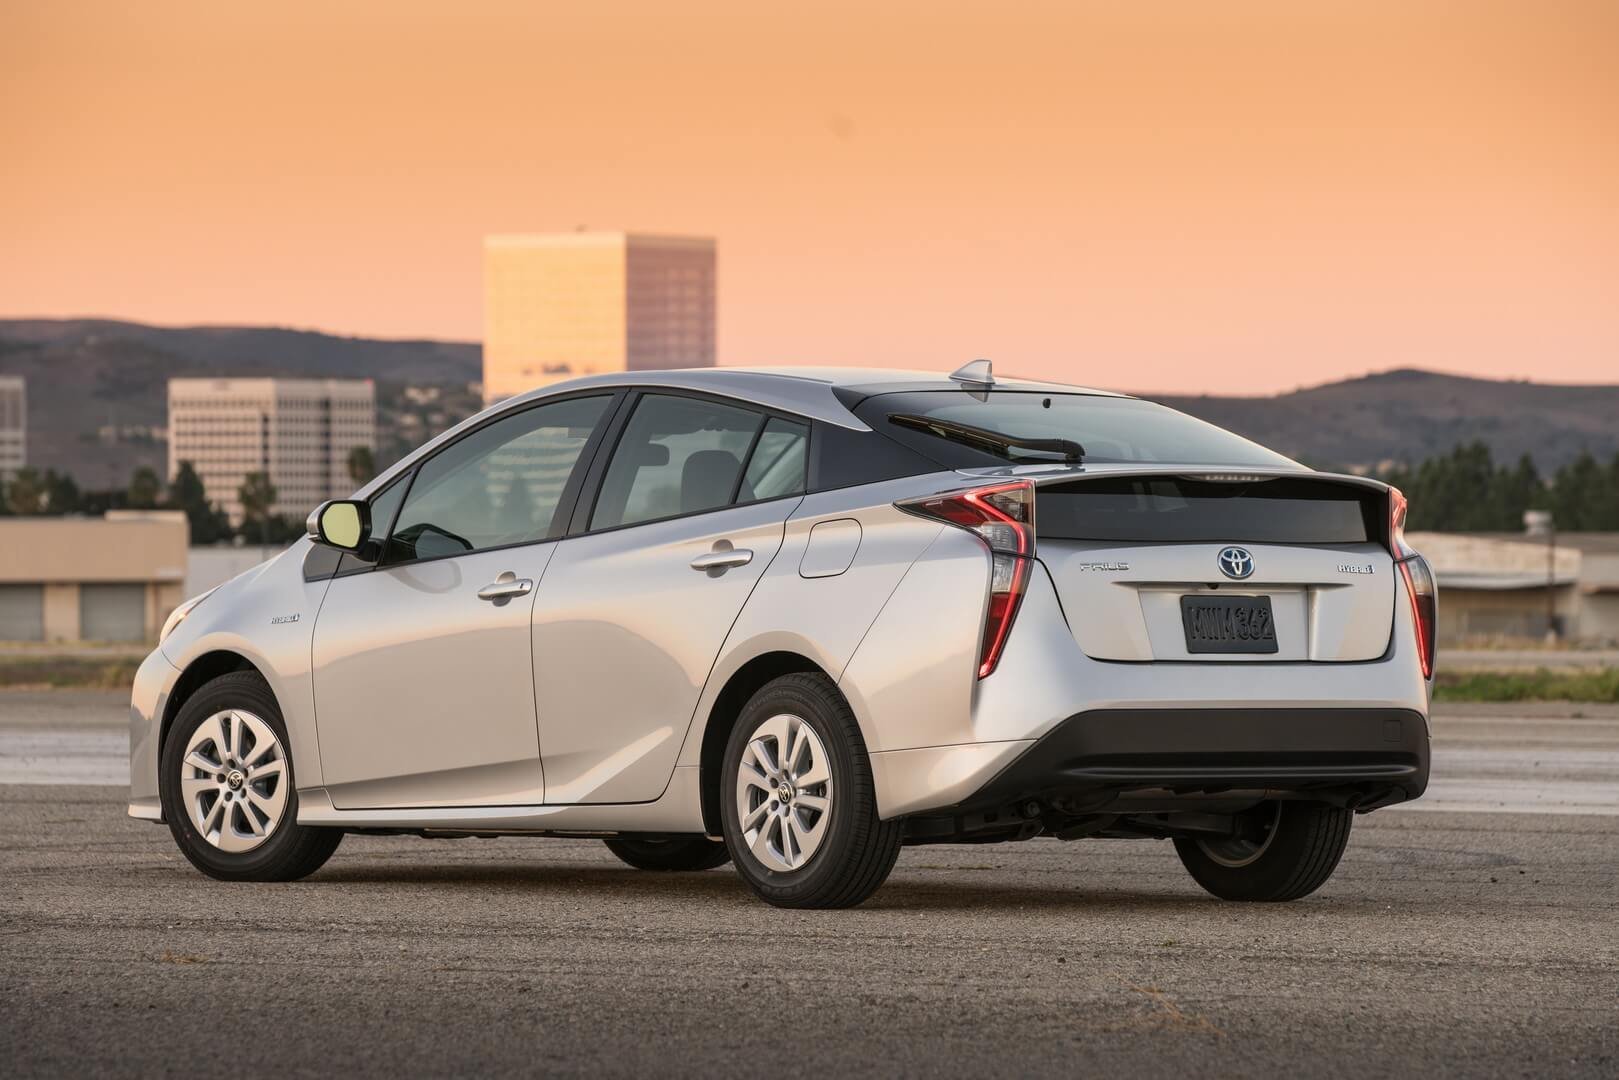 Acheter Toyota hybride : efficace et écologique